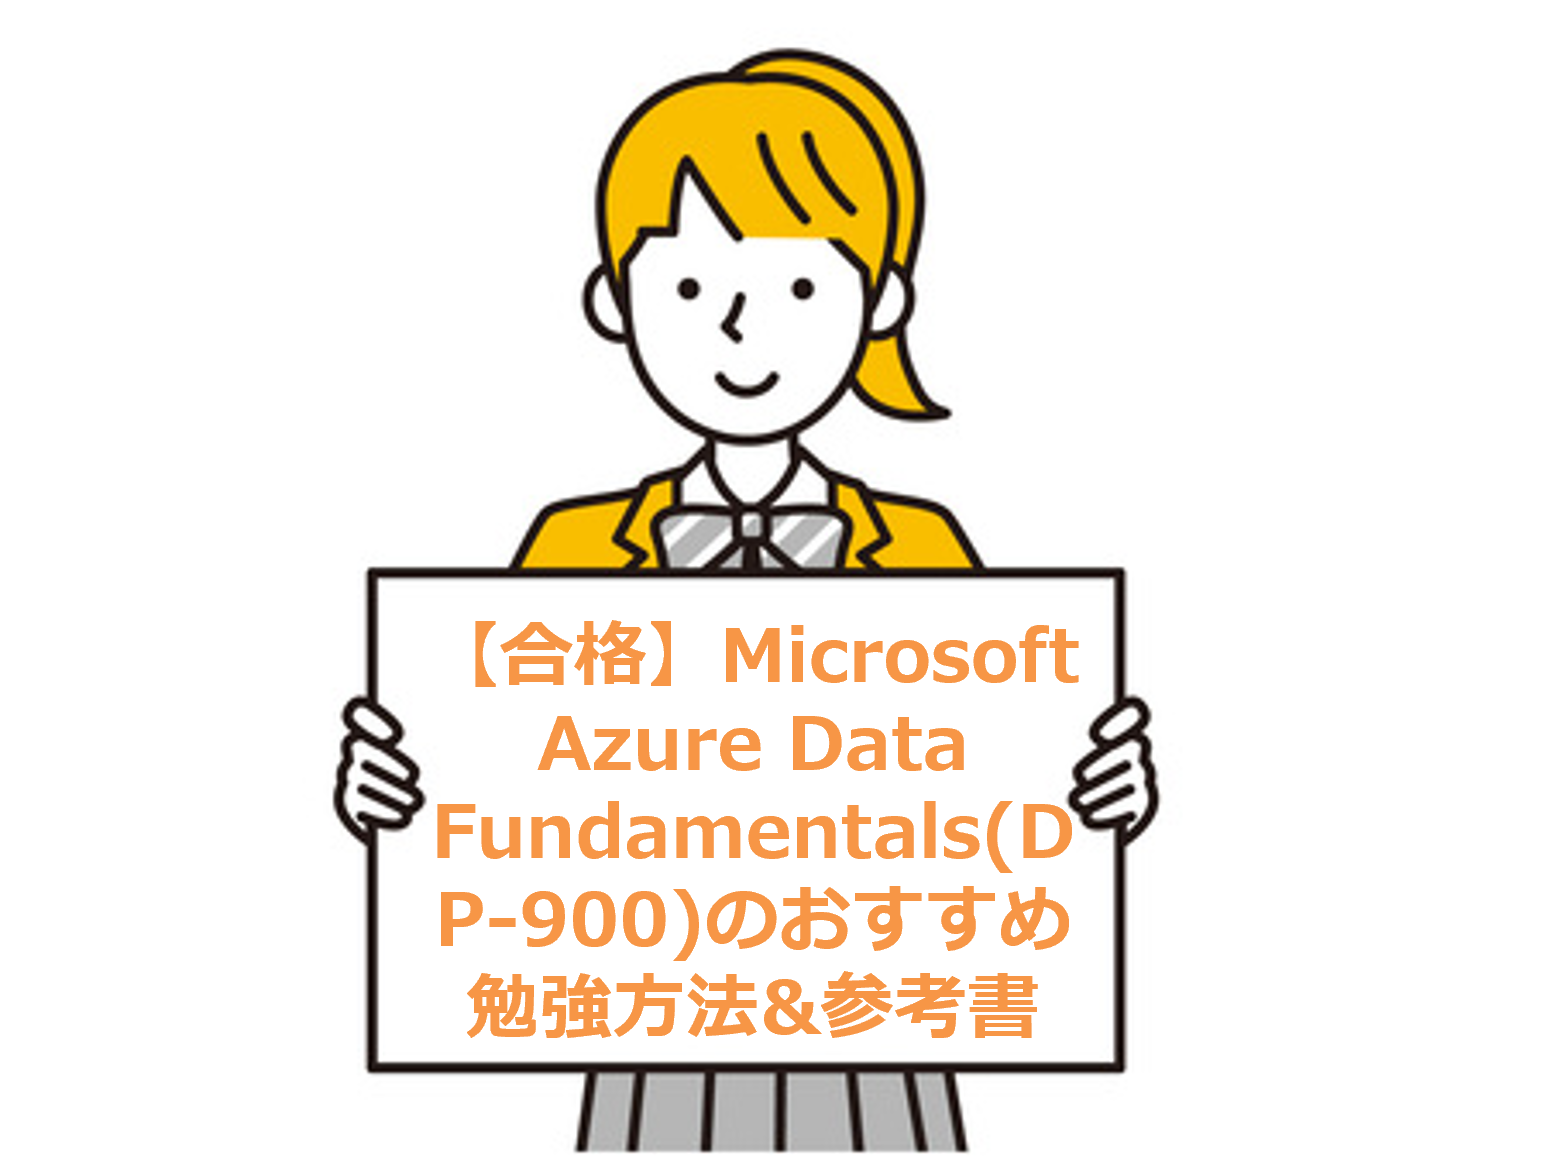 【合格】Microsoft Azure Data Fundamentals(DP-900)のおすすめ勉強方法&参考書